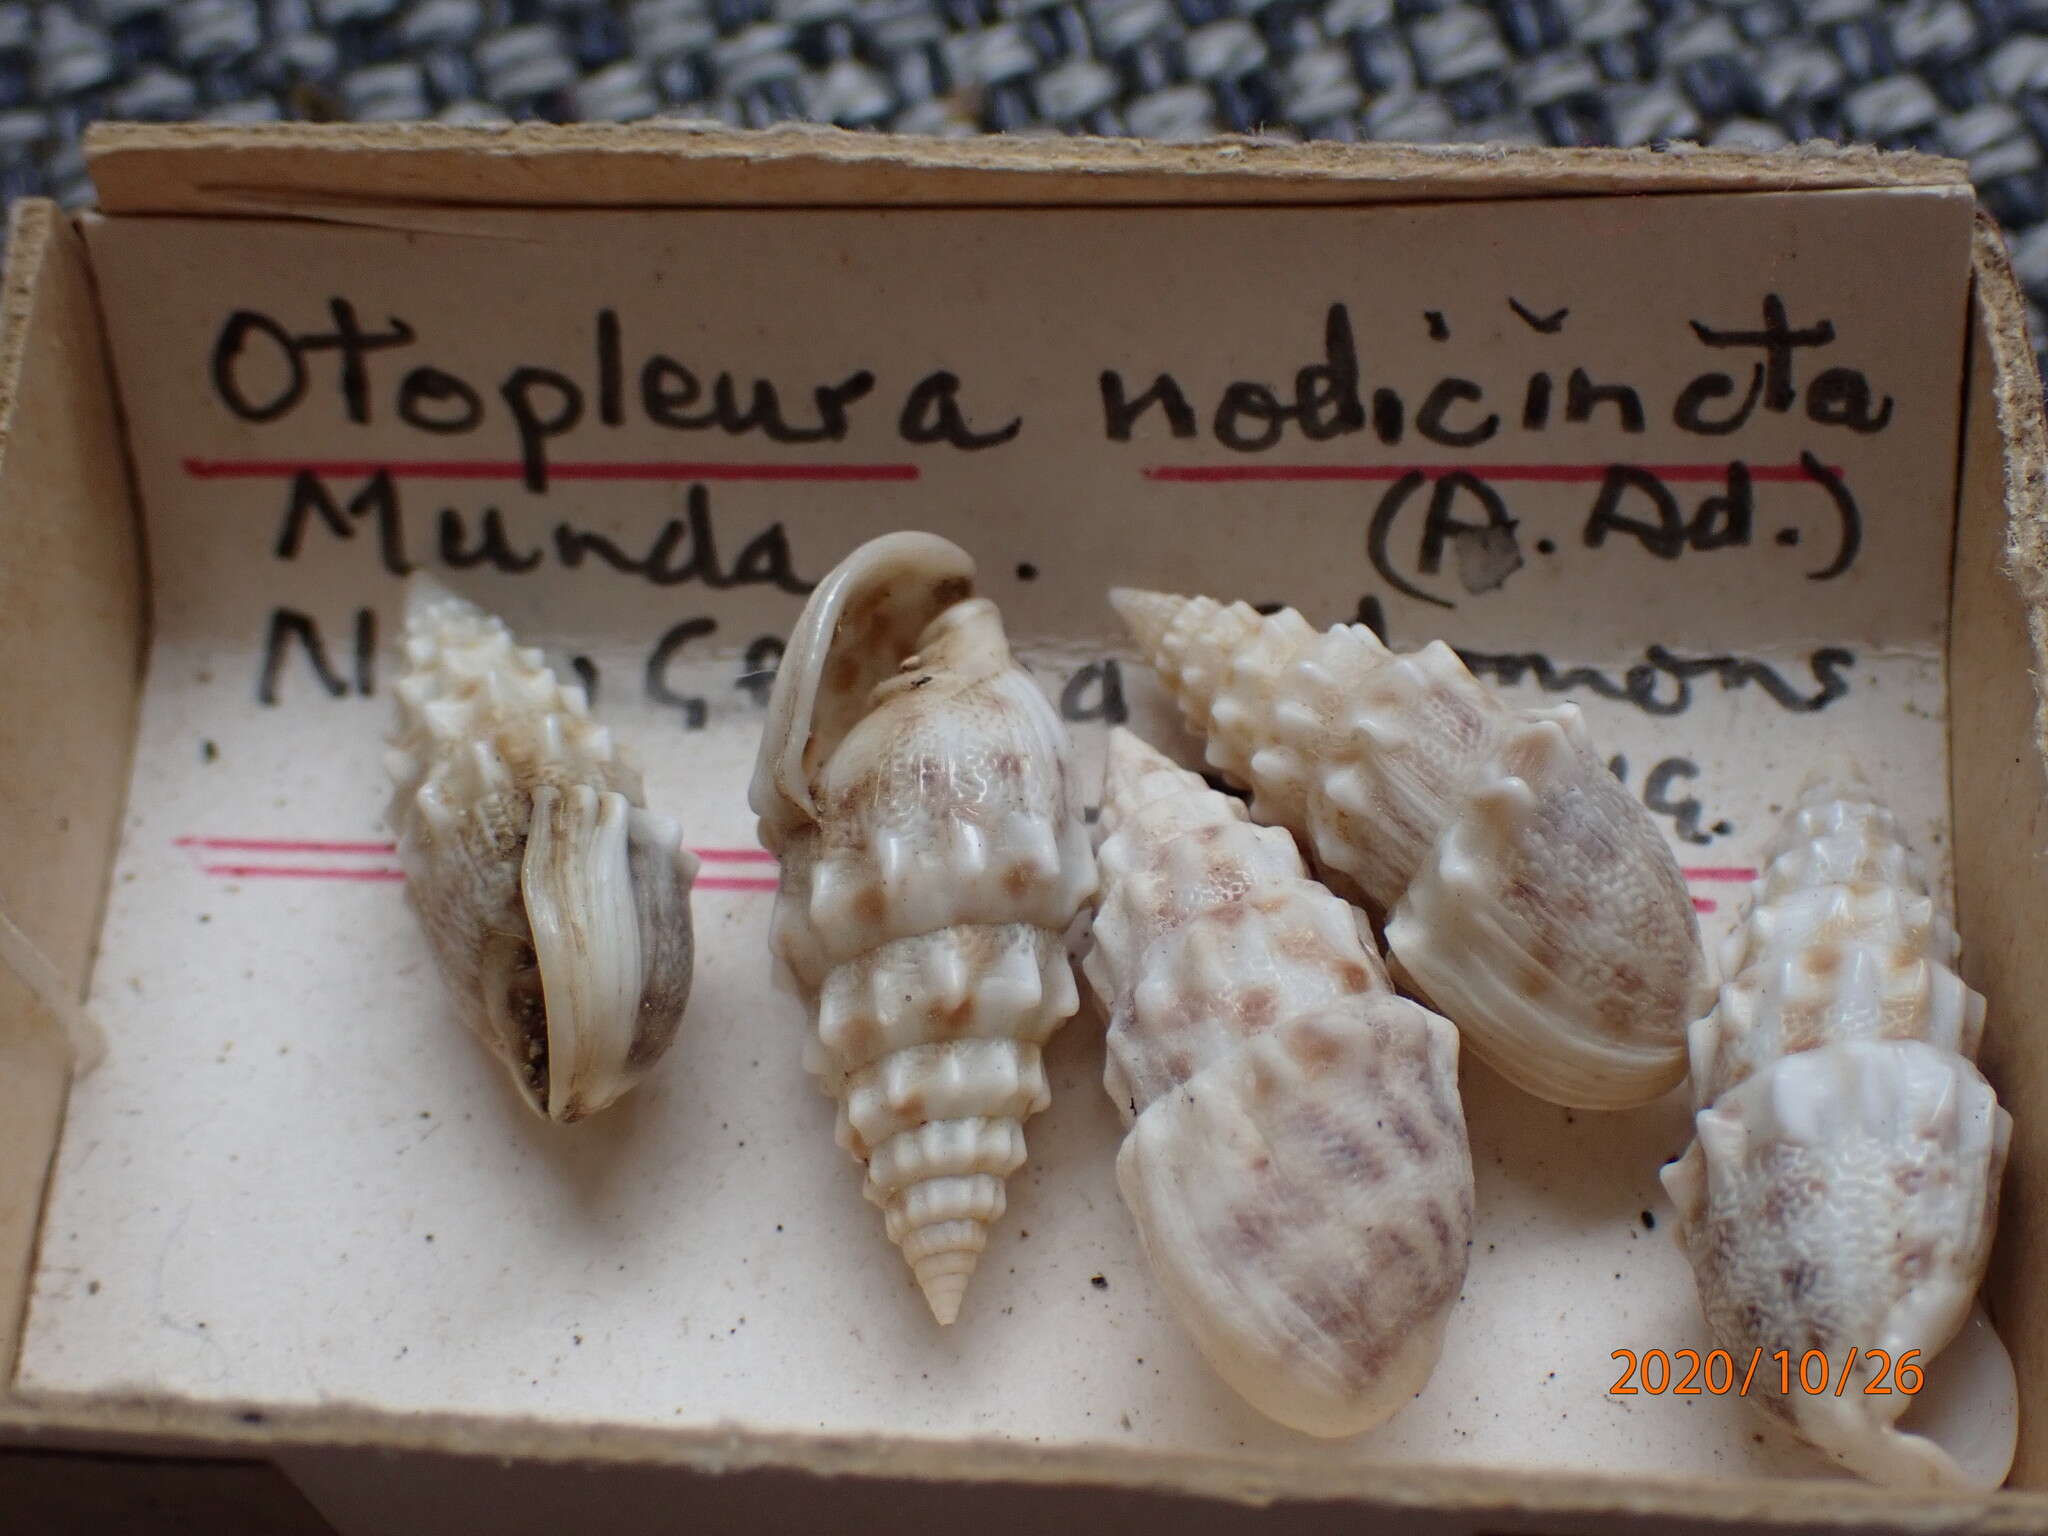 Image de Otopleura nodicincta (A. Adams 1854)